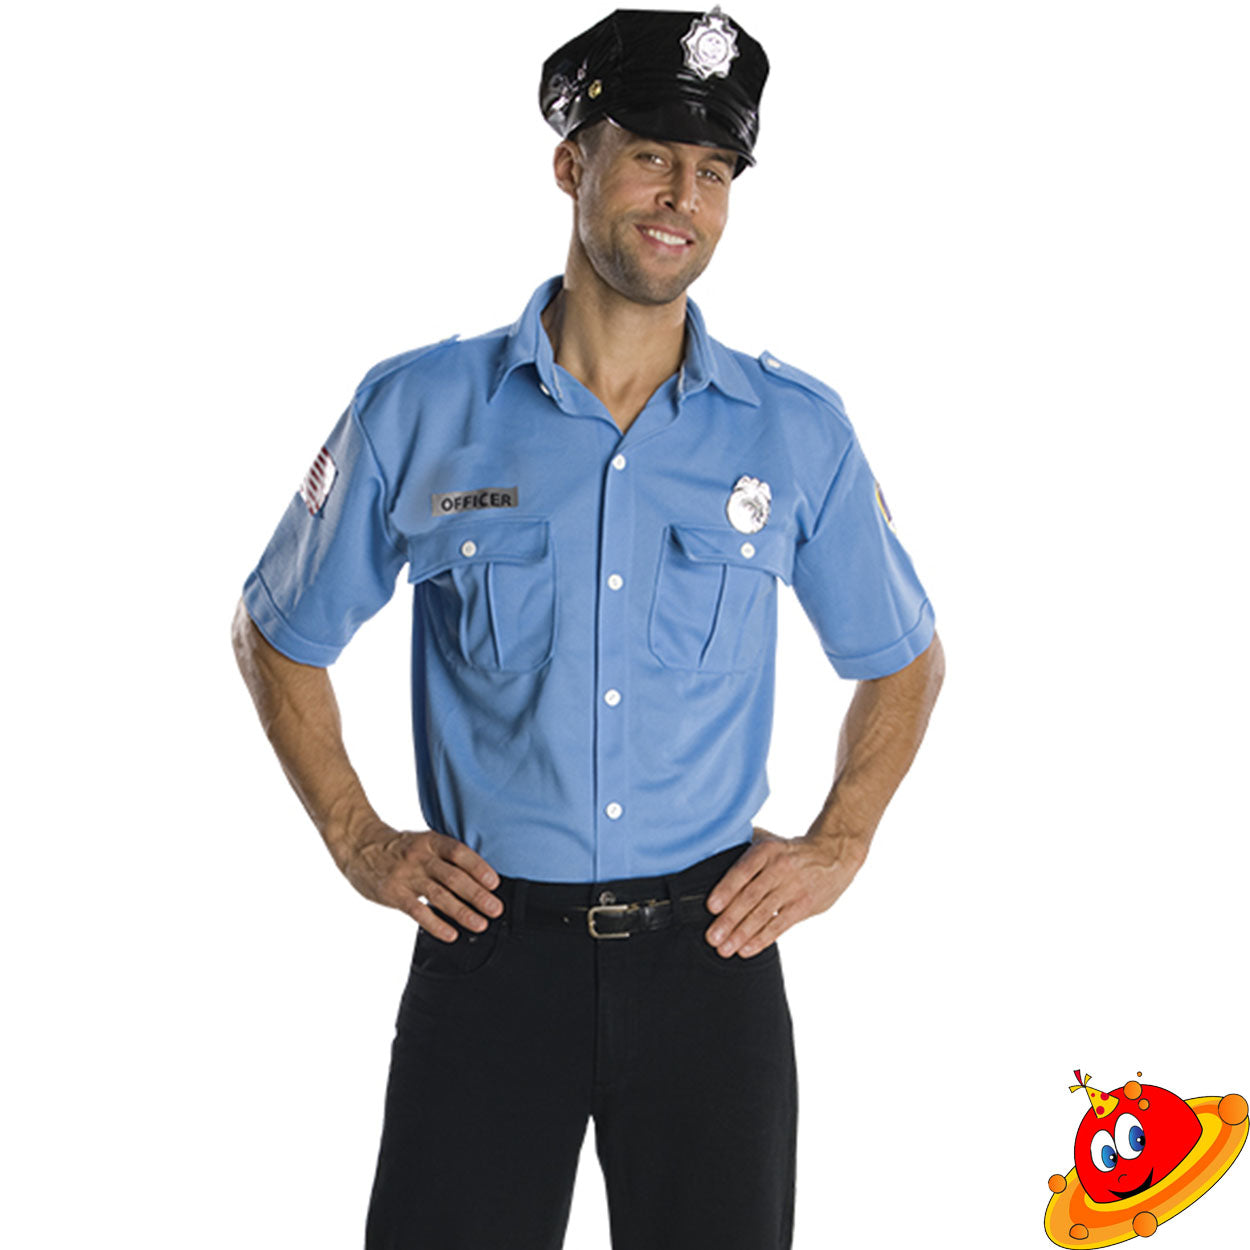 Camicia Poliziotto Officer con stemmi  Tg 52/54